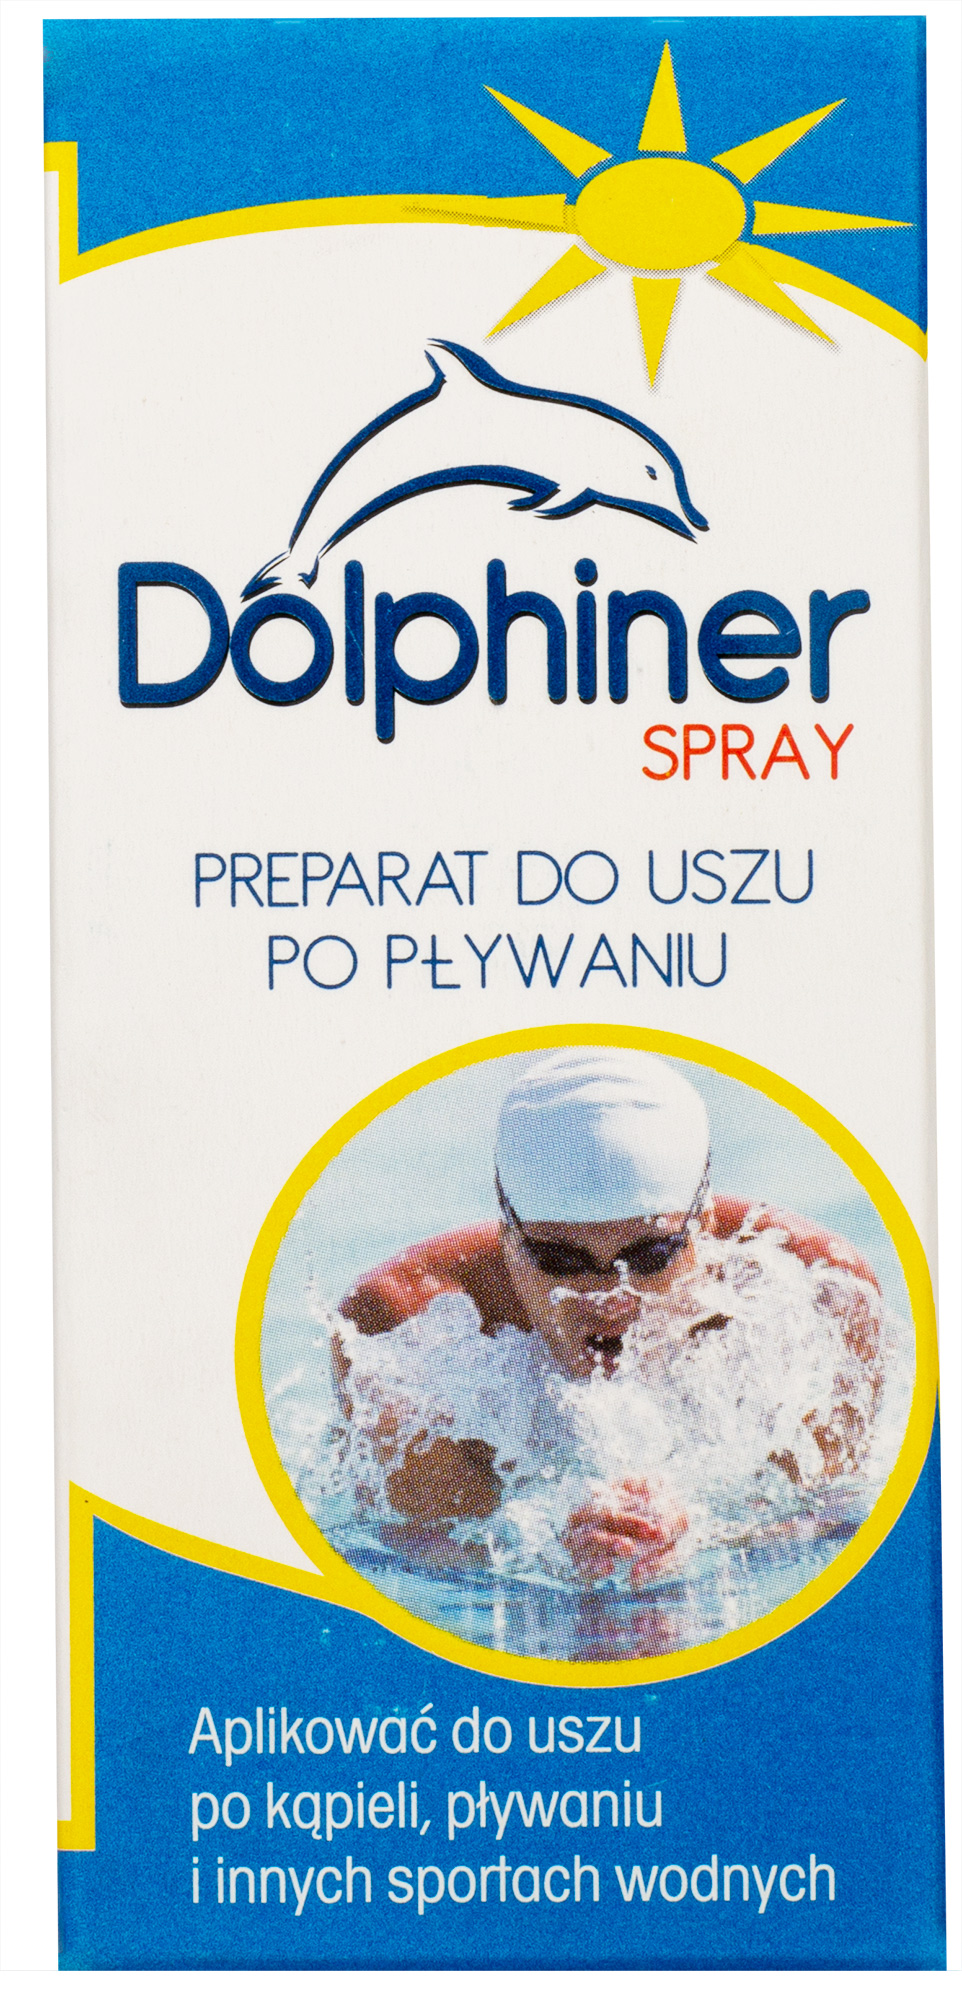 dolphinerspray-do-uszu-przod-pudelka